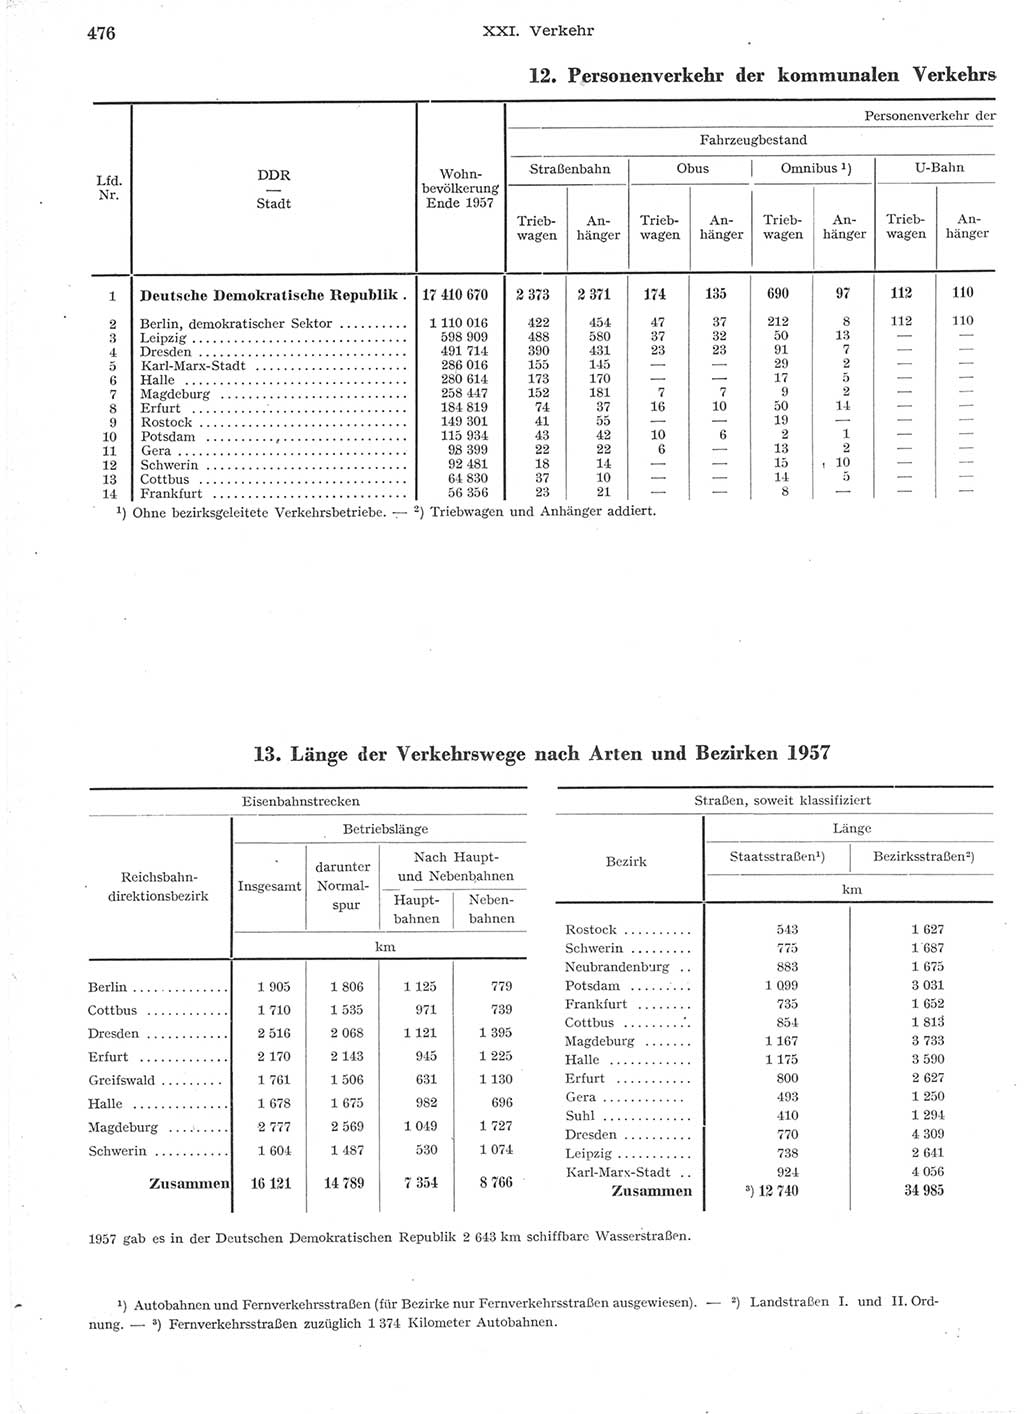 Statistisches Jahrbuch der Deutschen Demokratischen Republik (DDR) 1957, Seite 476 (Stat. Jb. DDR 1957, S. 476)